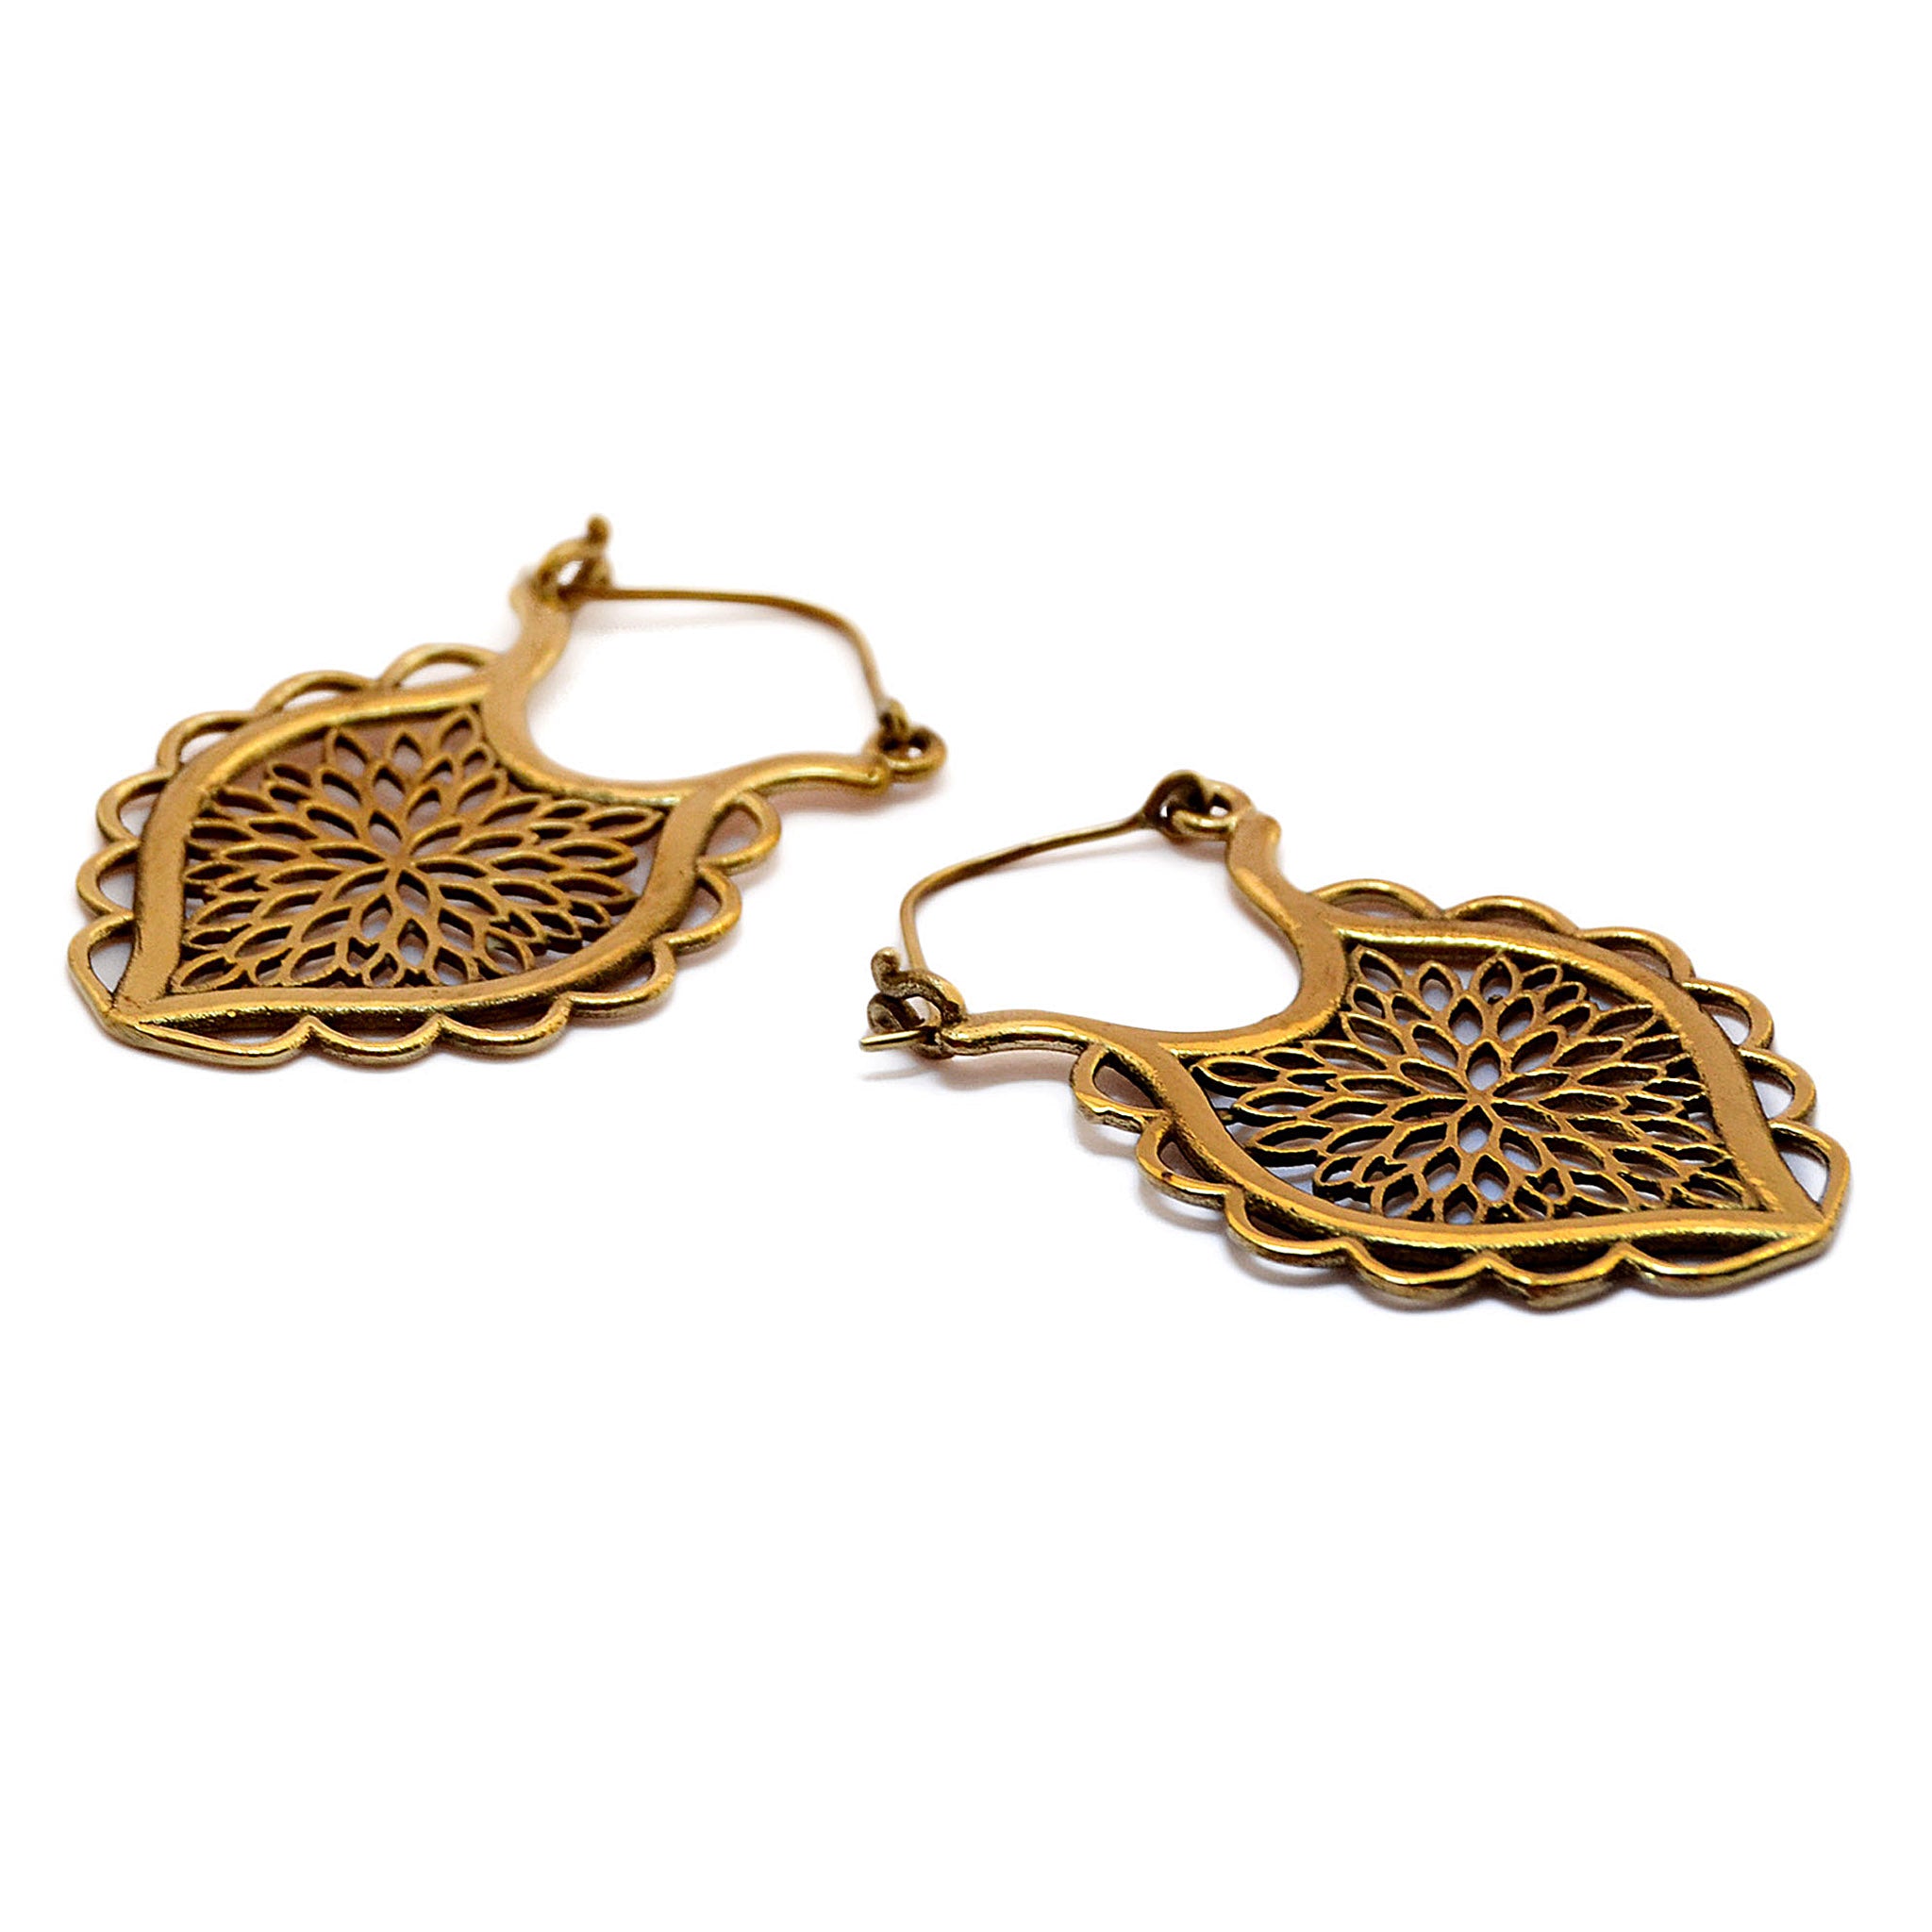 Gypsy earrings gold